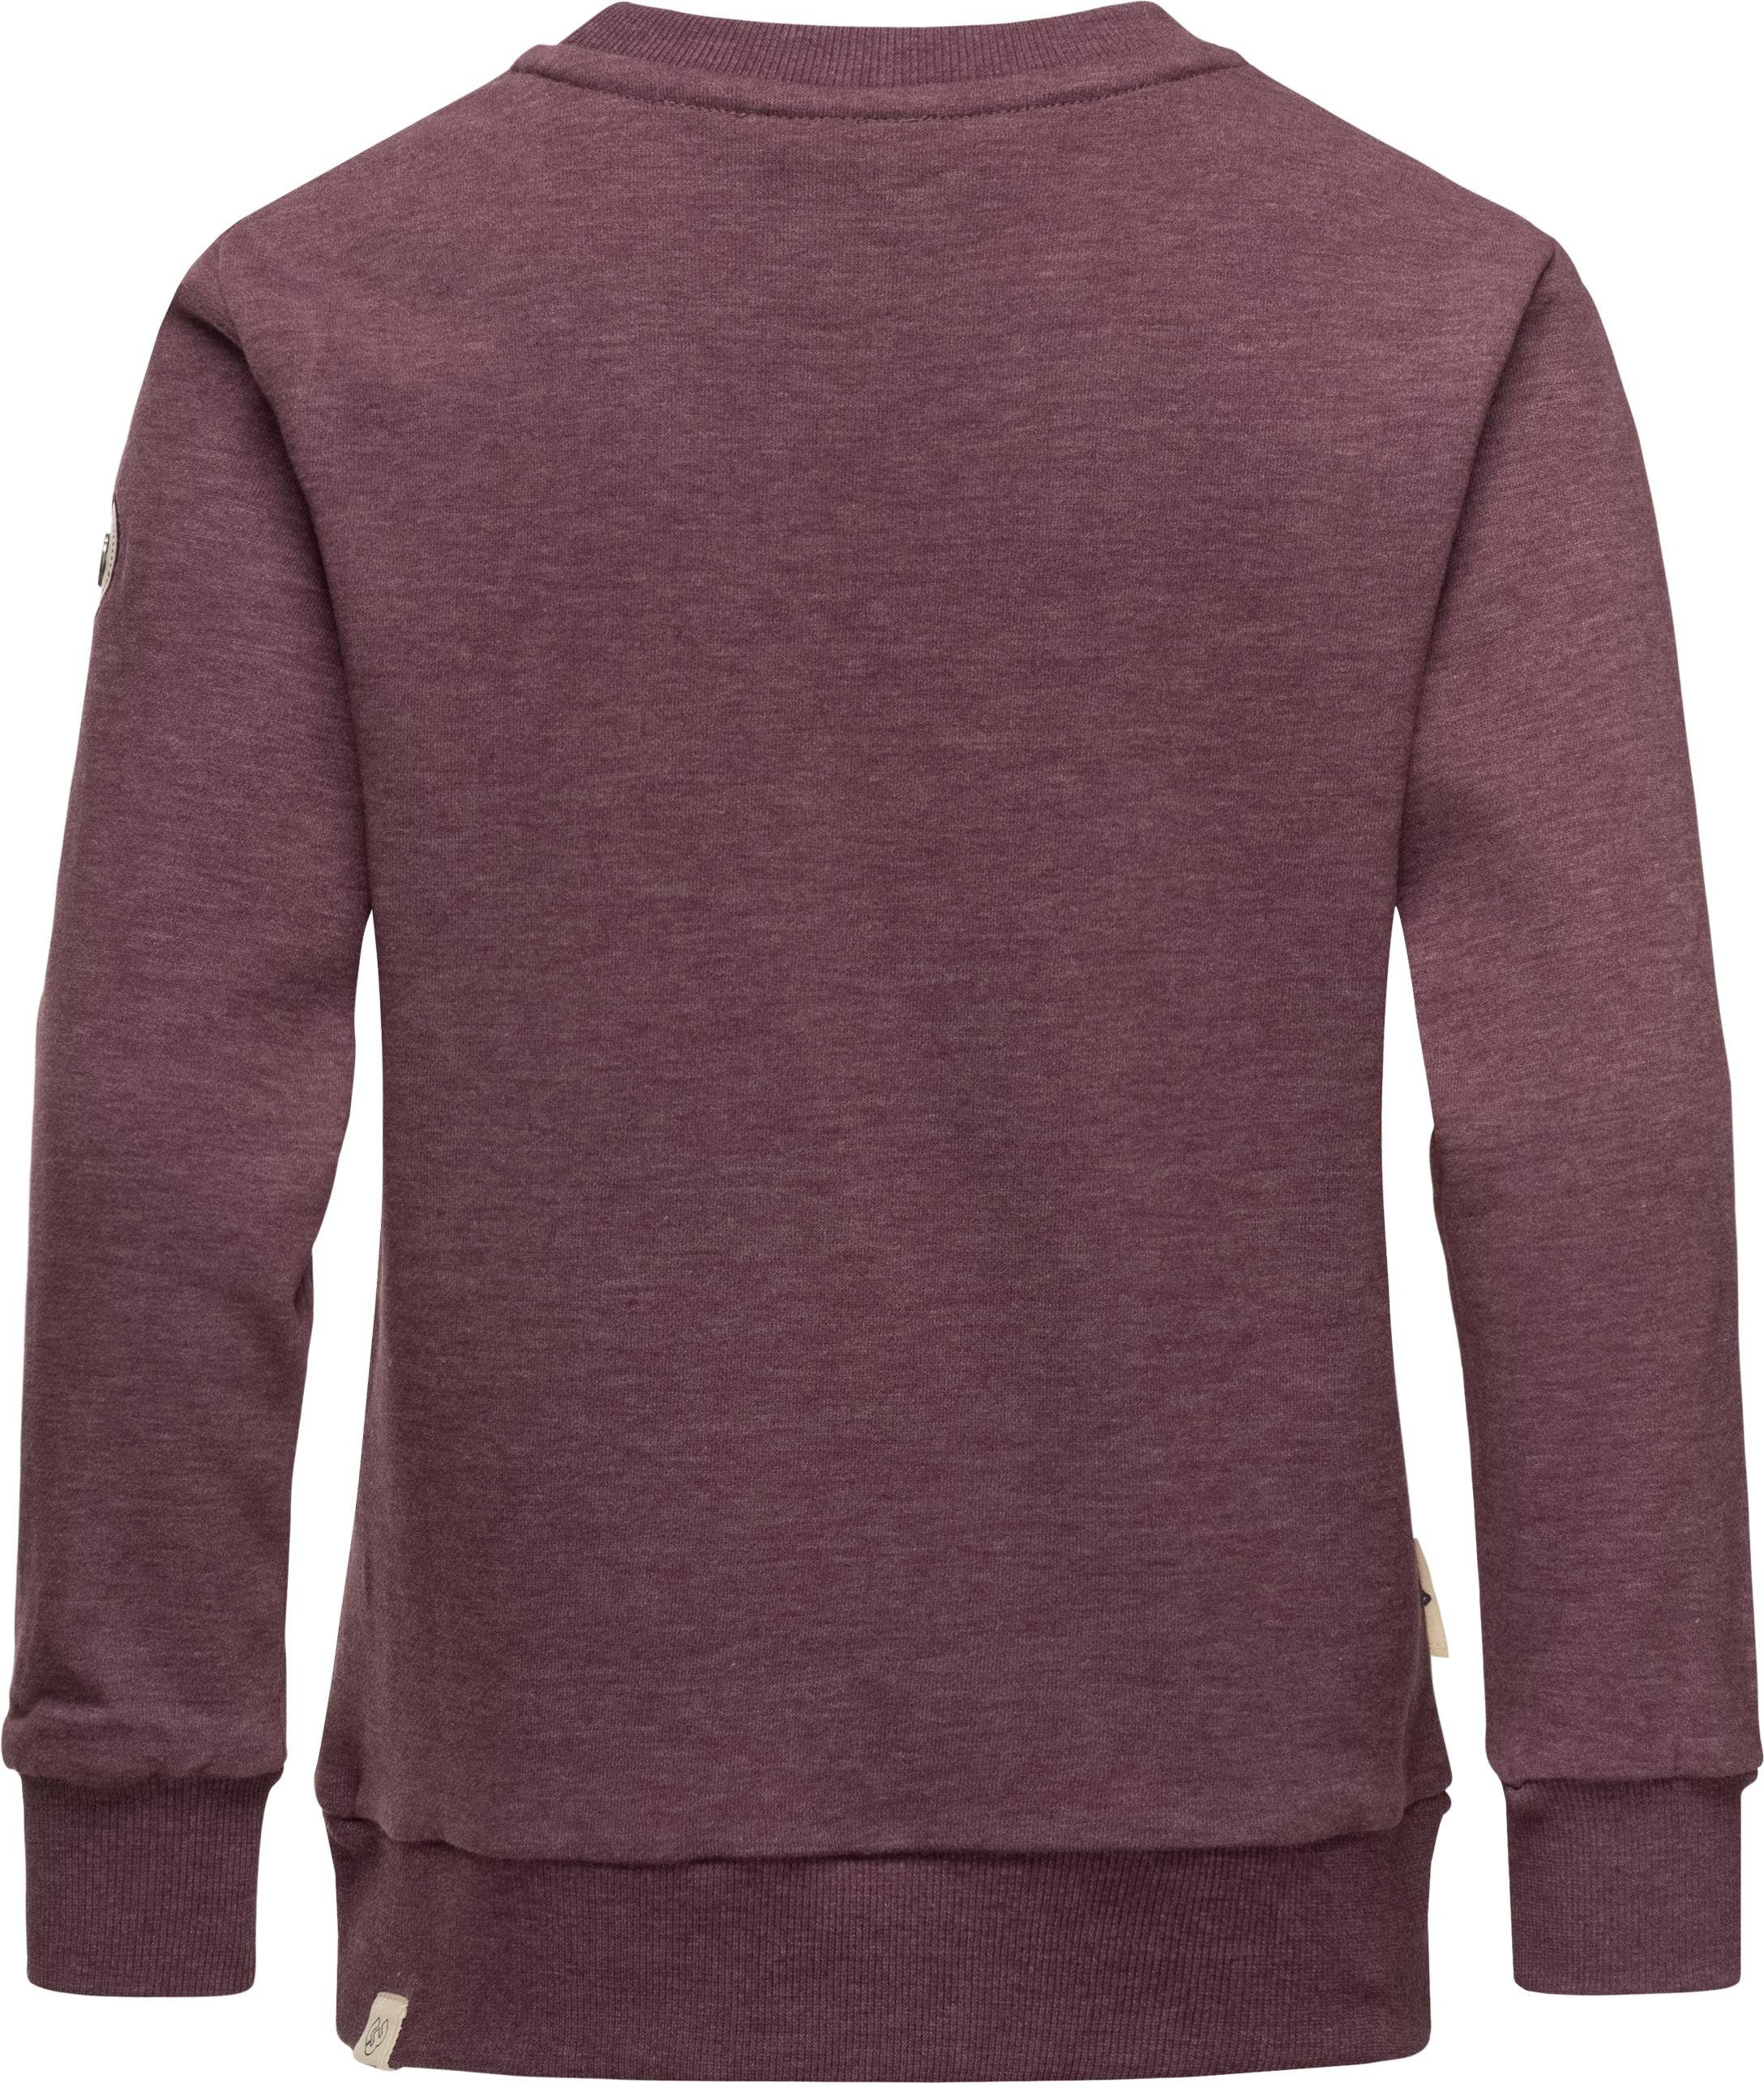 stylisches pflaume Ragwear Print Sweater Sweatshirt Mädchen Evka mit Organic coolem Print